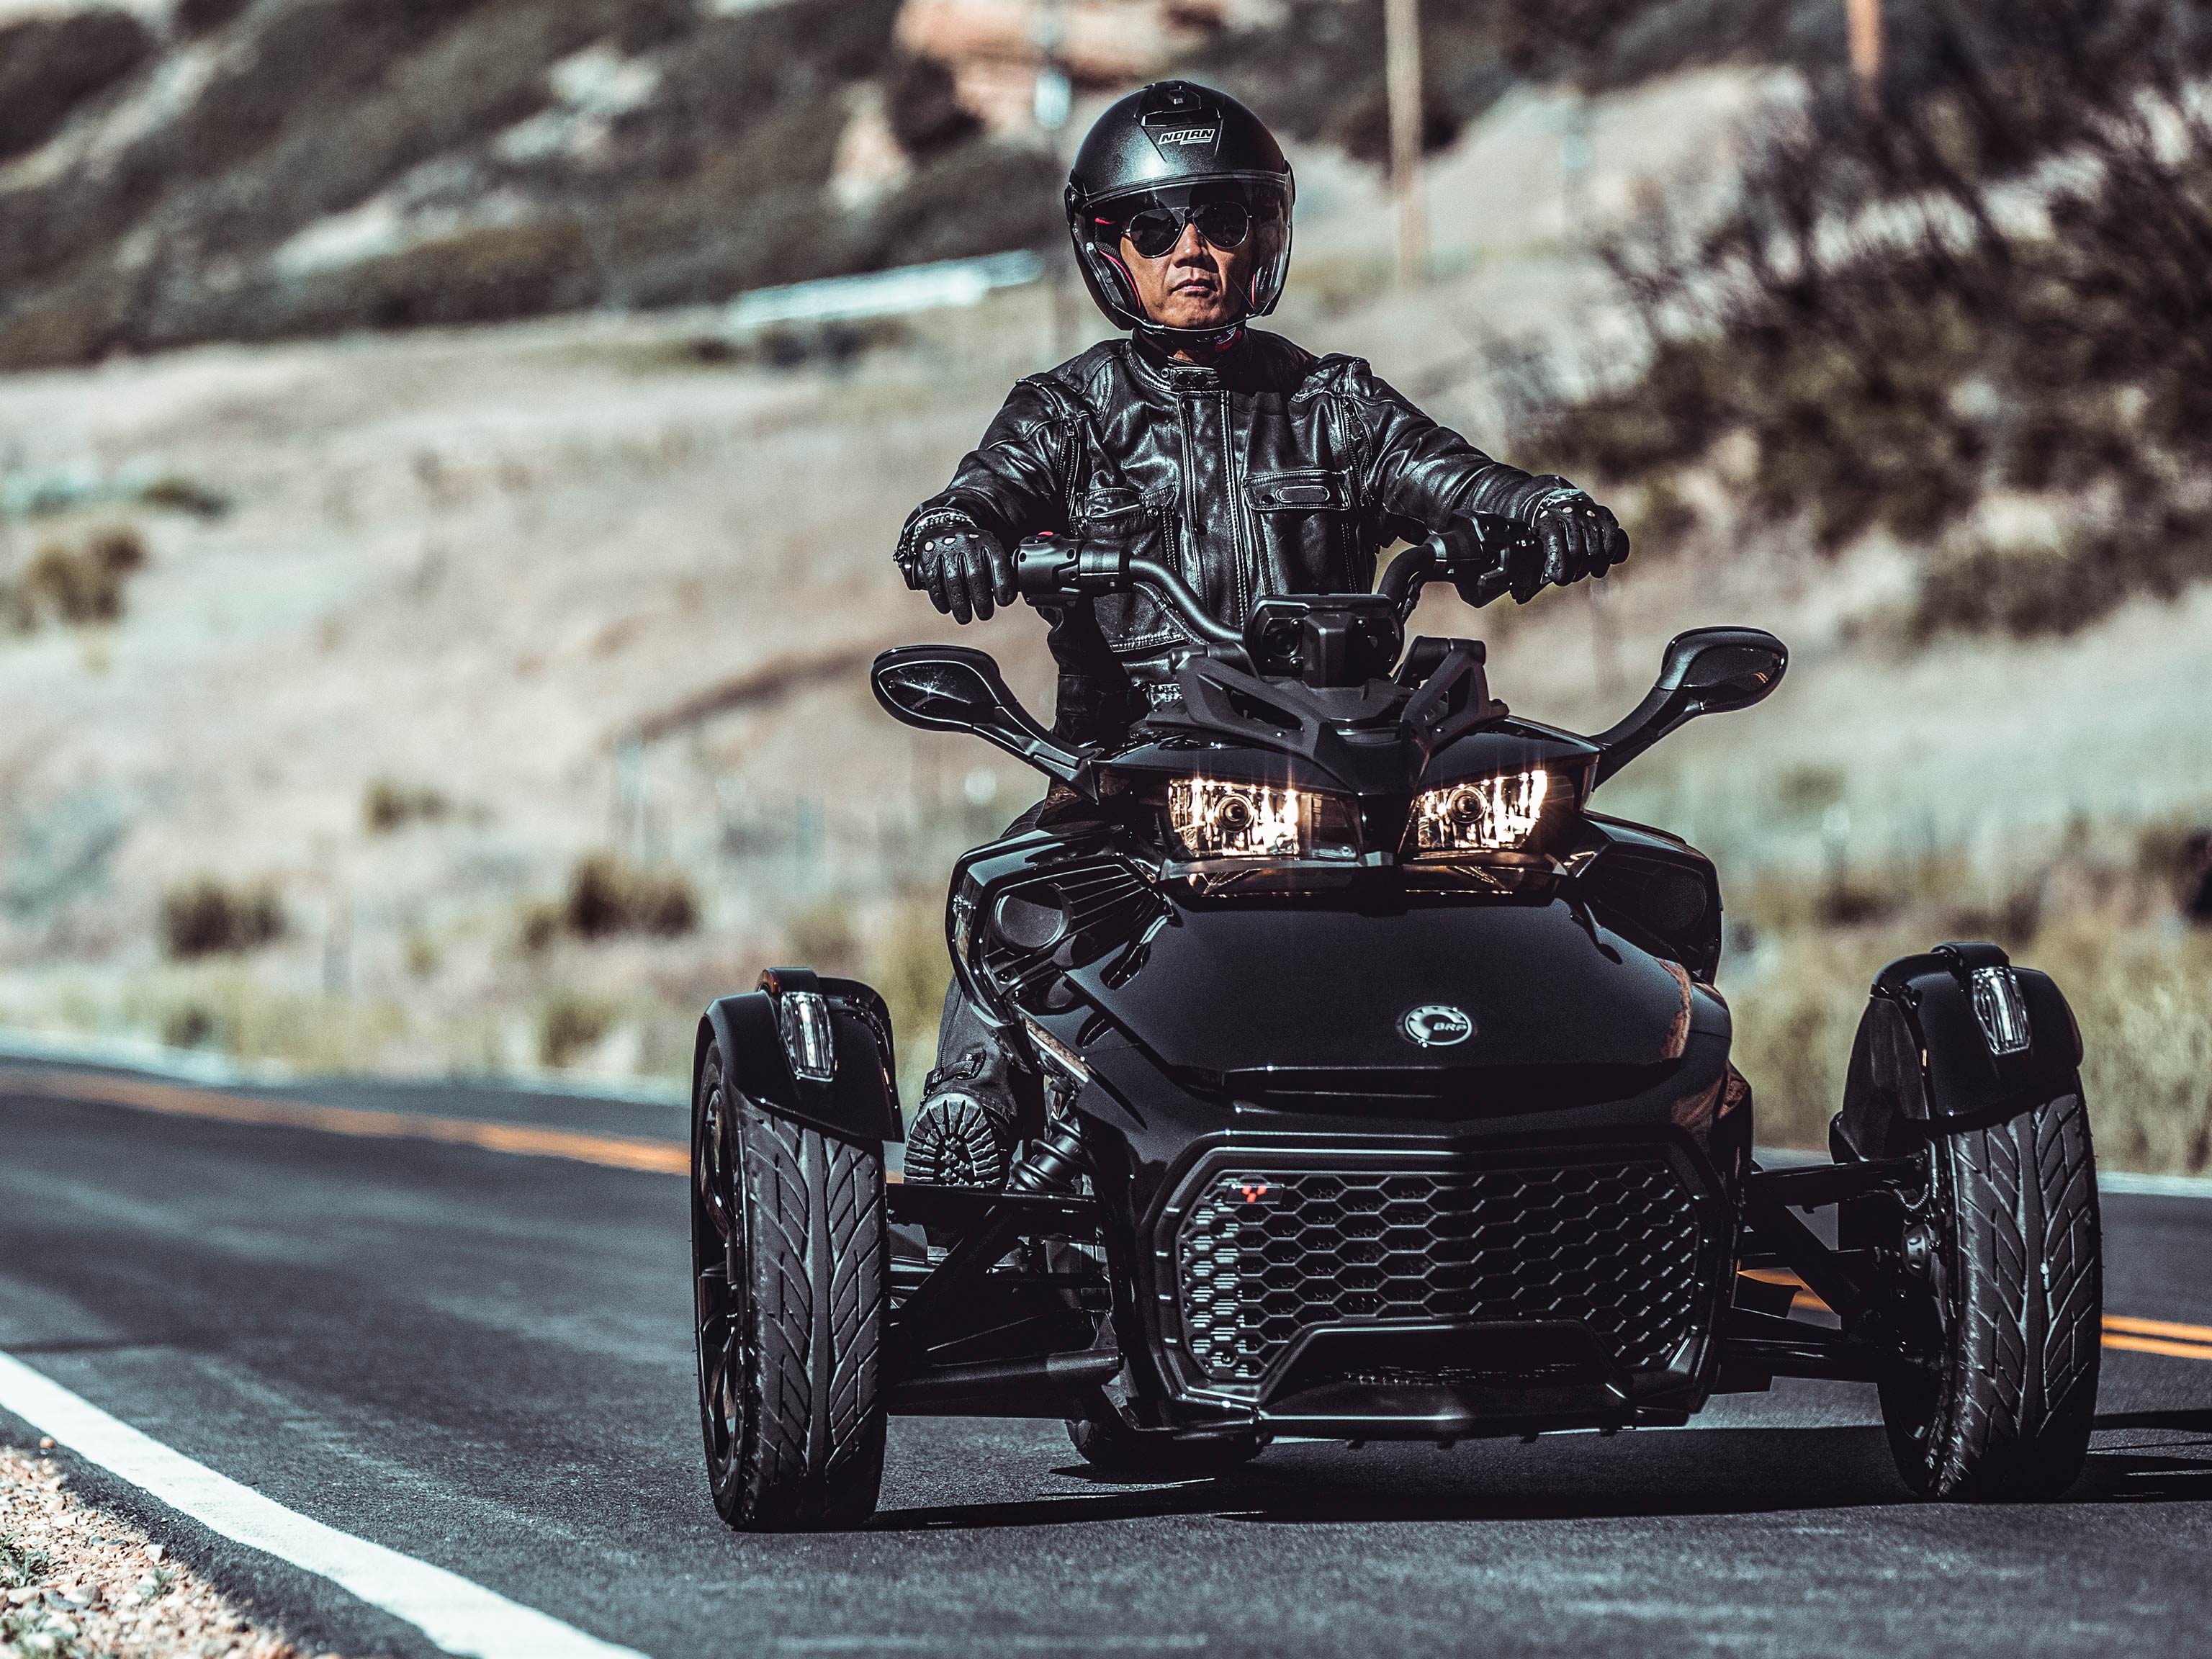 Moški vozi njegov Can-Am Spyder po prazni cesti v puščavi